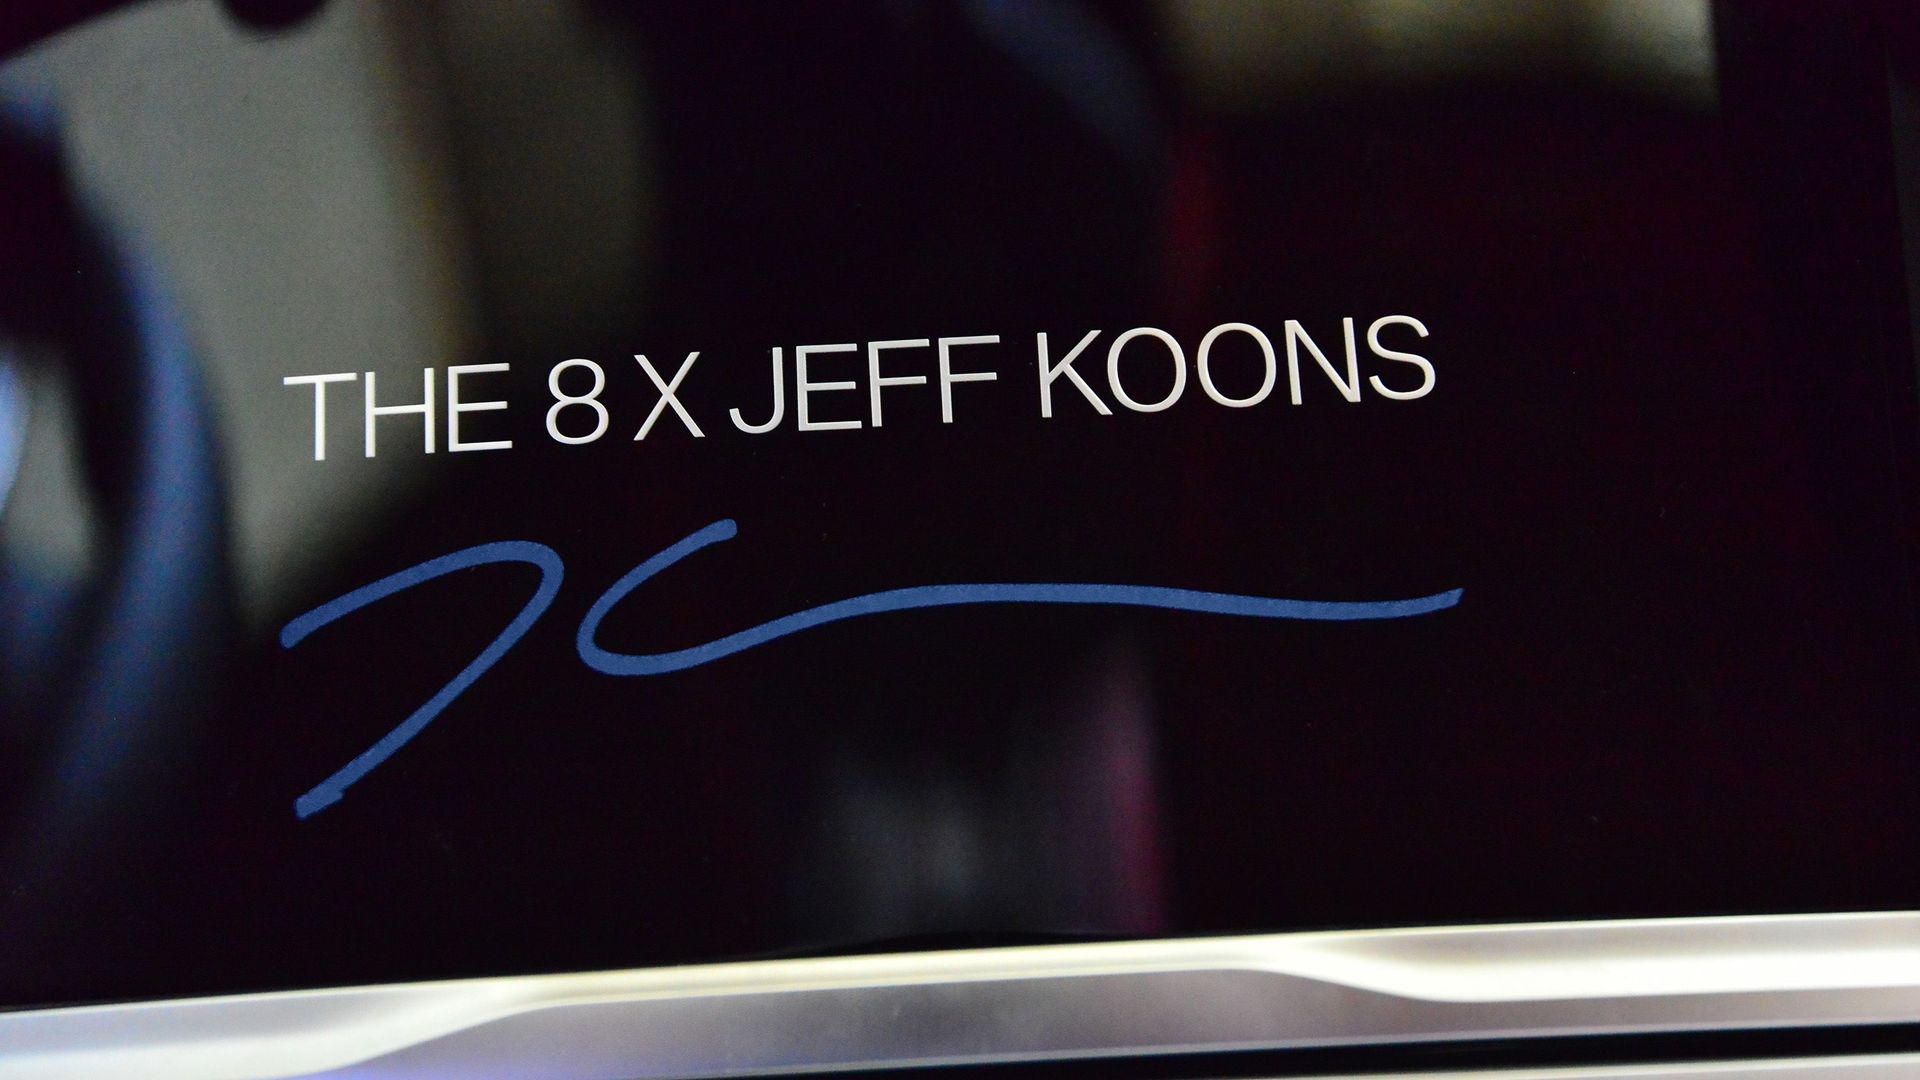 Jeff Koons collabore une nouvelle fois avec BMW dans le cadre d'une série spéciale de la Série 8 Gran Coupé qui sera dévoilée en 2022.